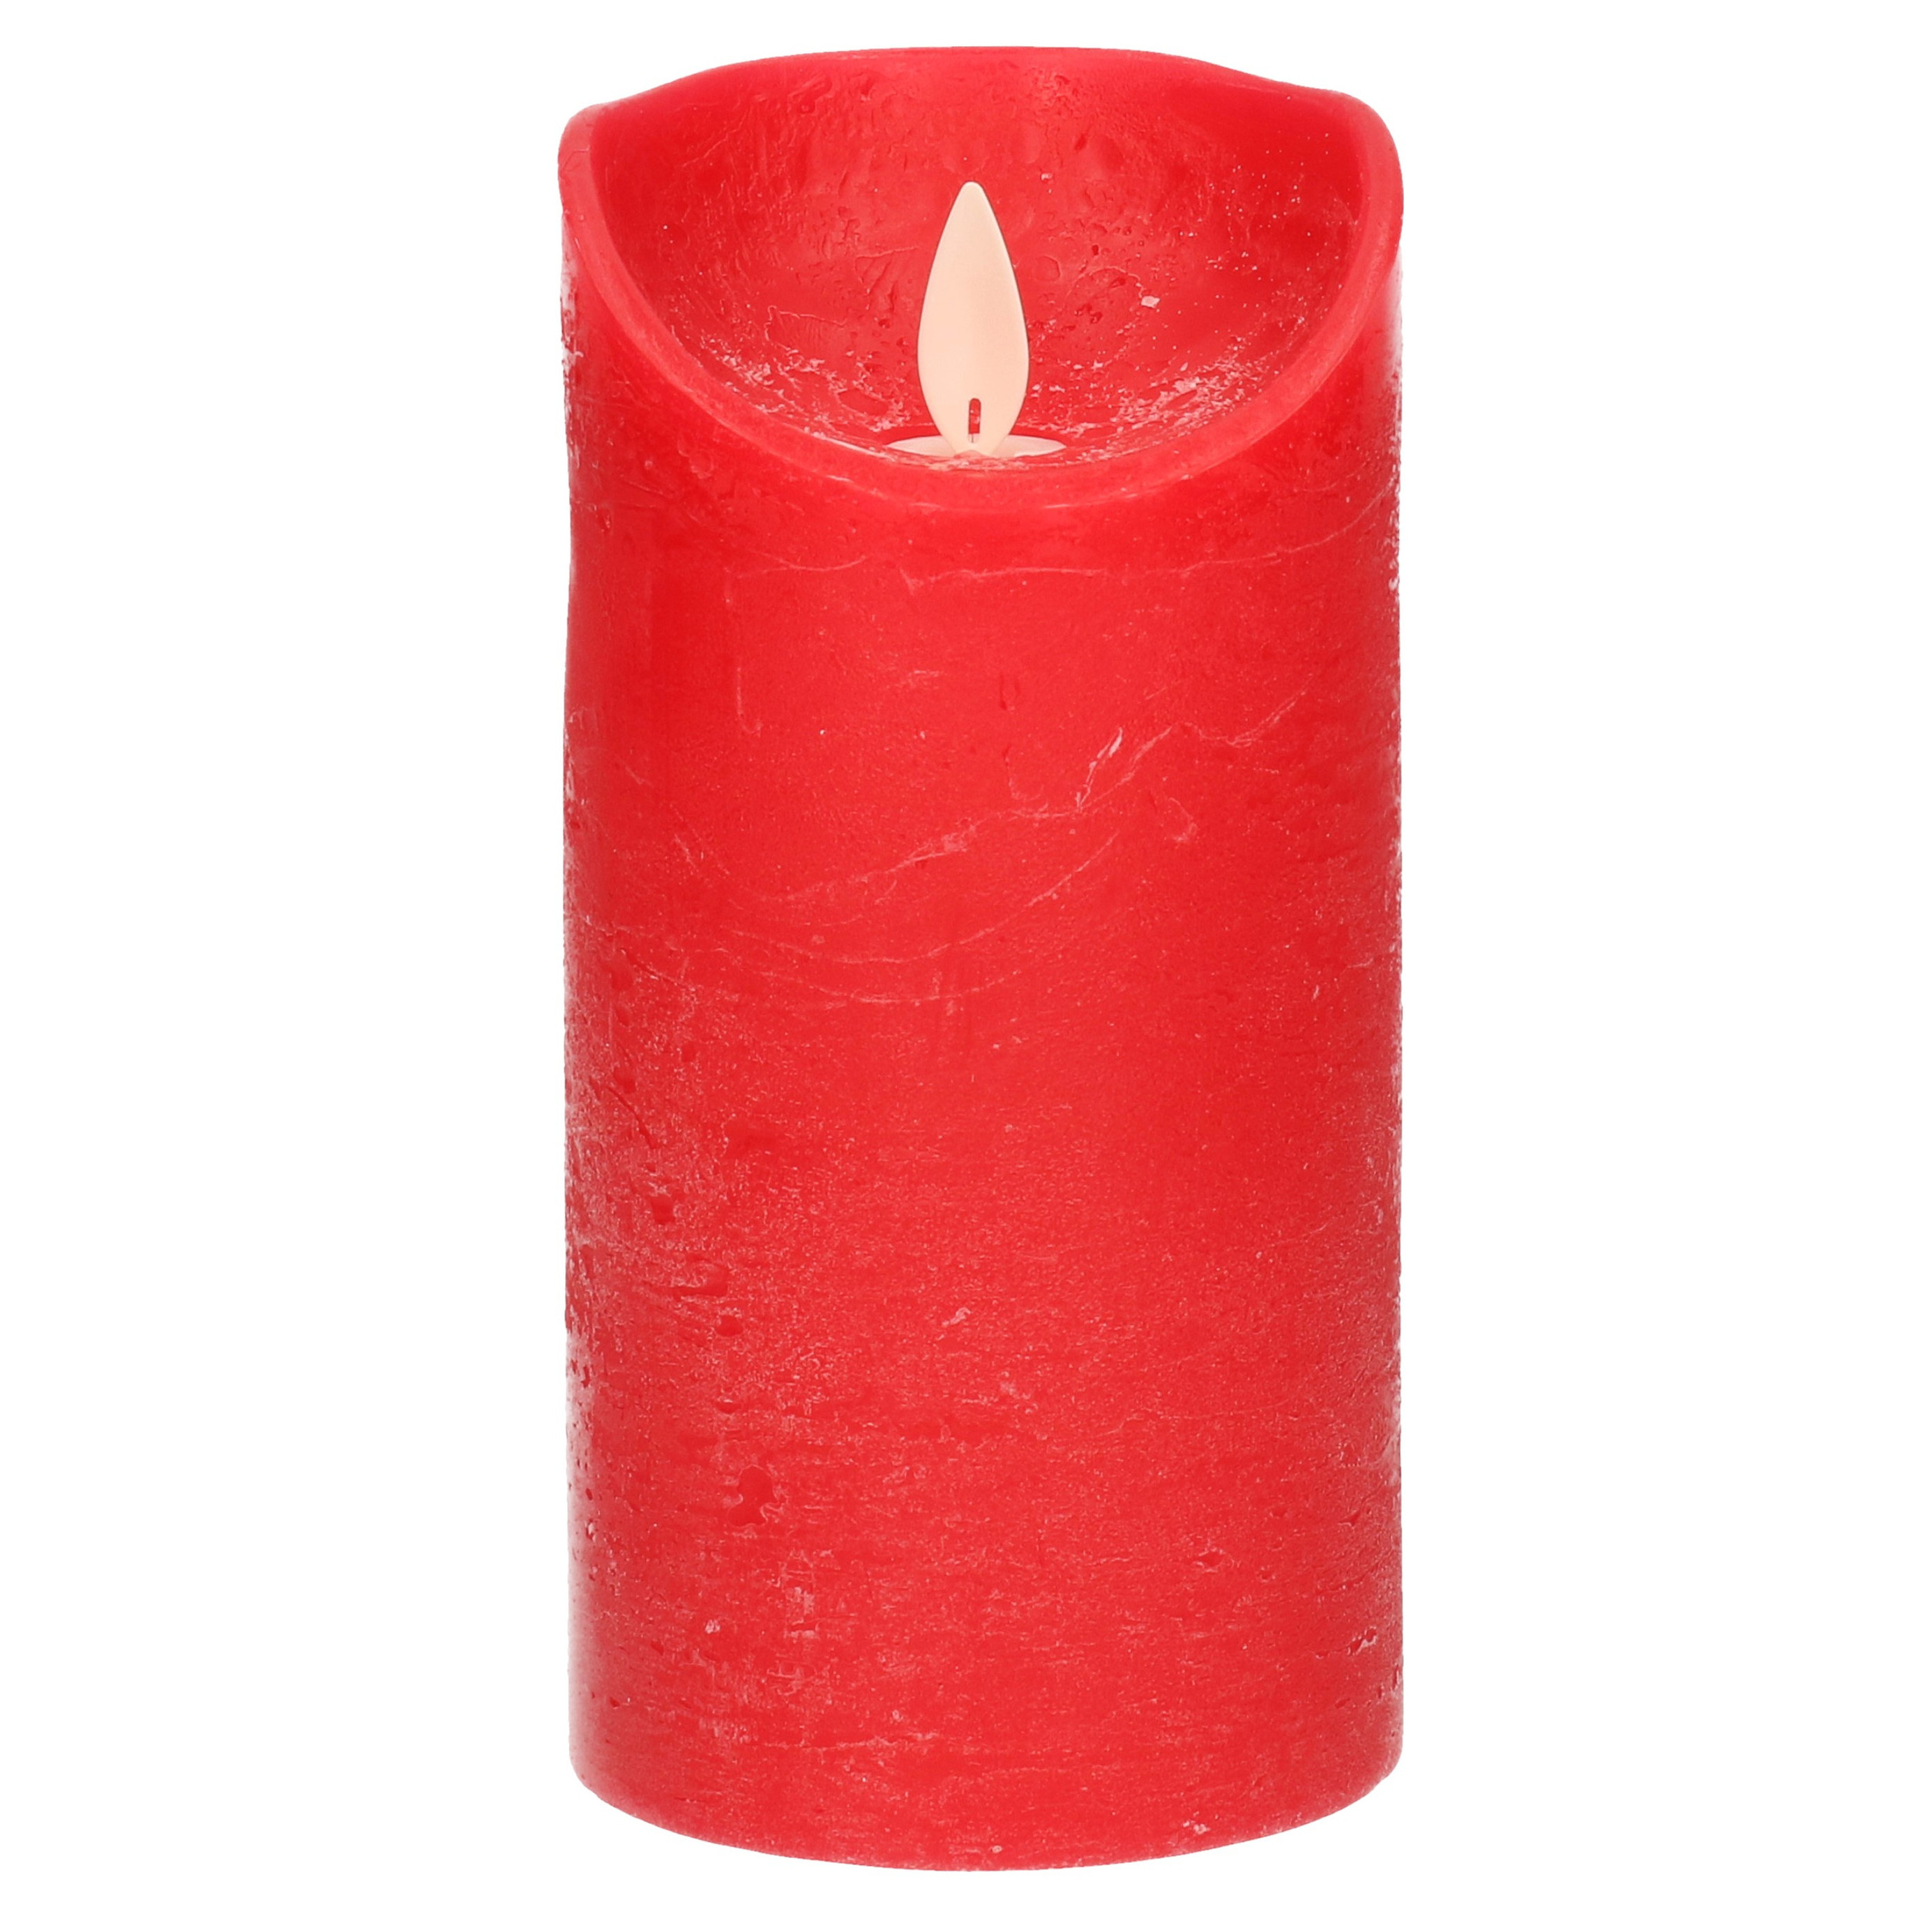 1x Rode LED kaarsen-stompkaarsen met bewegende vlam 15 cm